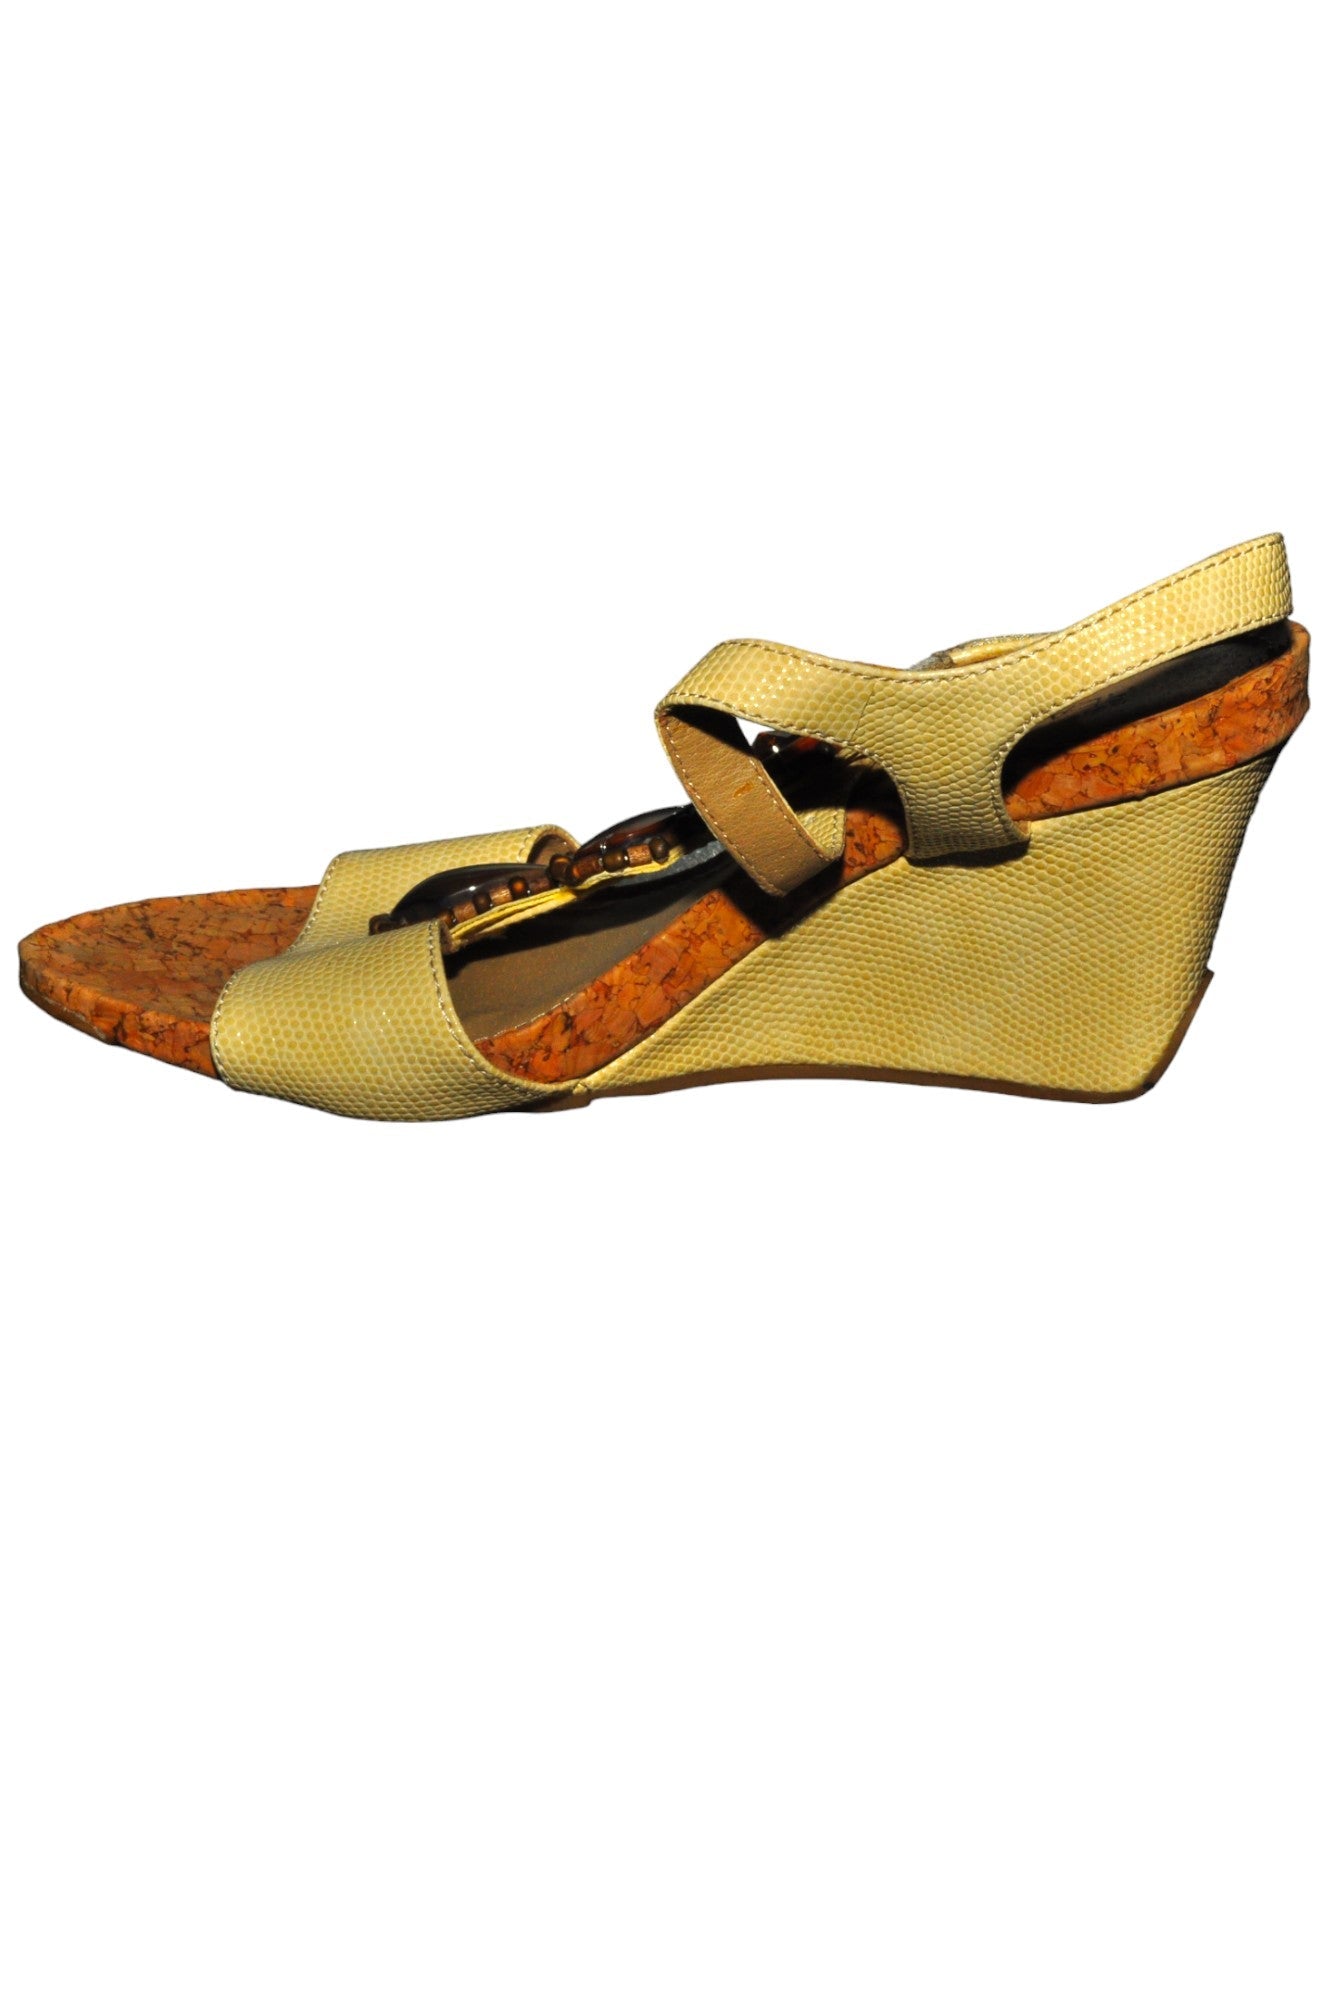 KENNETH COLE Women Sandals Regular fit in Beige - Size 6 | 14.4 $ KOOP